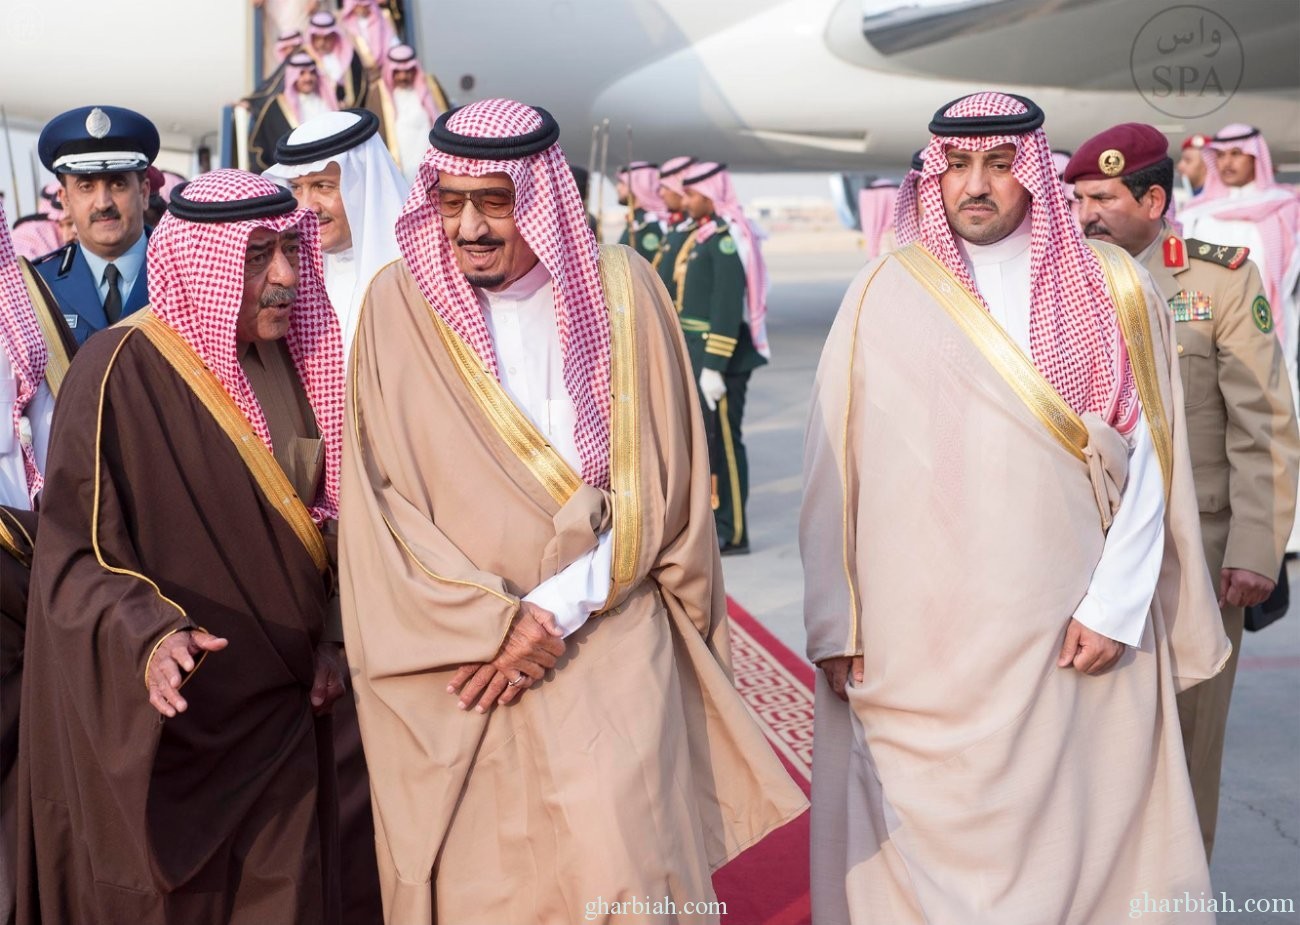  ولي العهد يصل الرياض بعد تمثيل المملكة في قمة الـعشرين